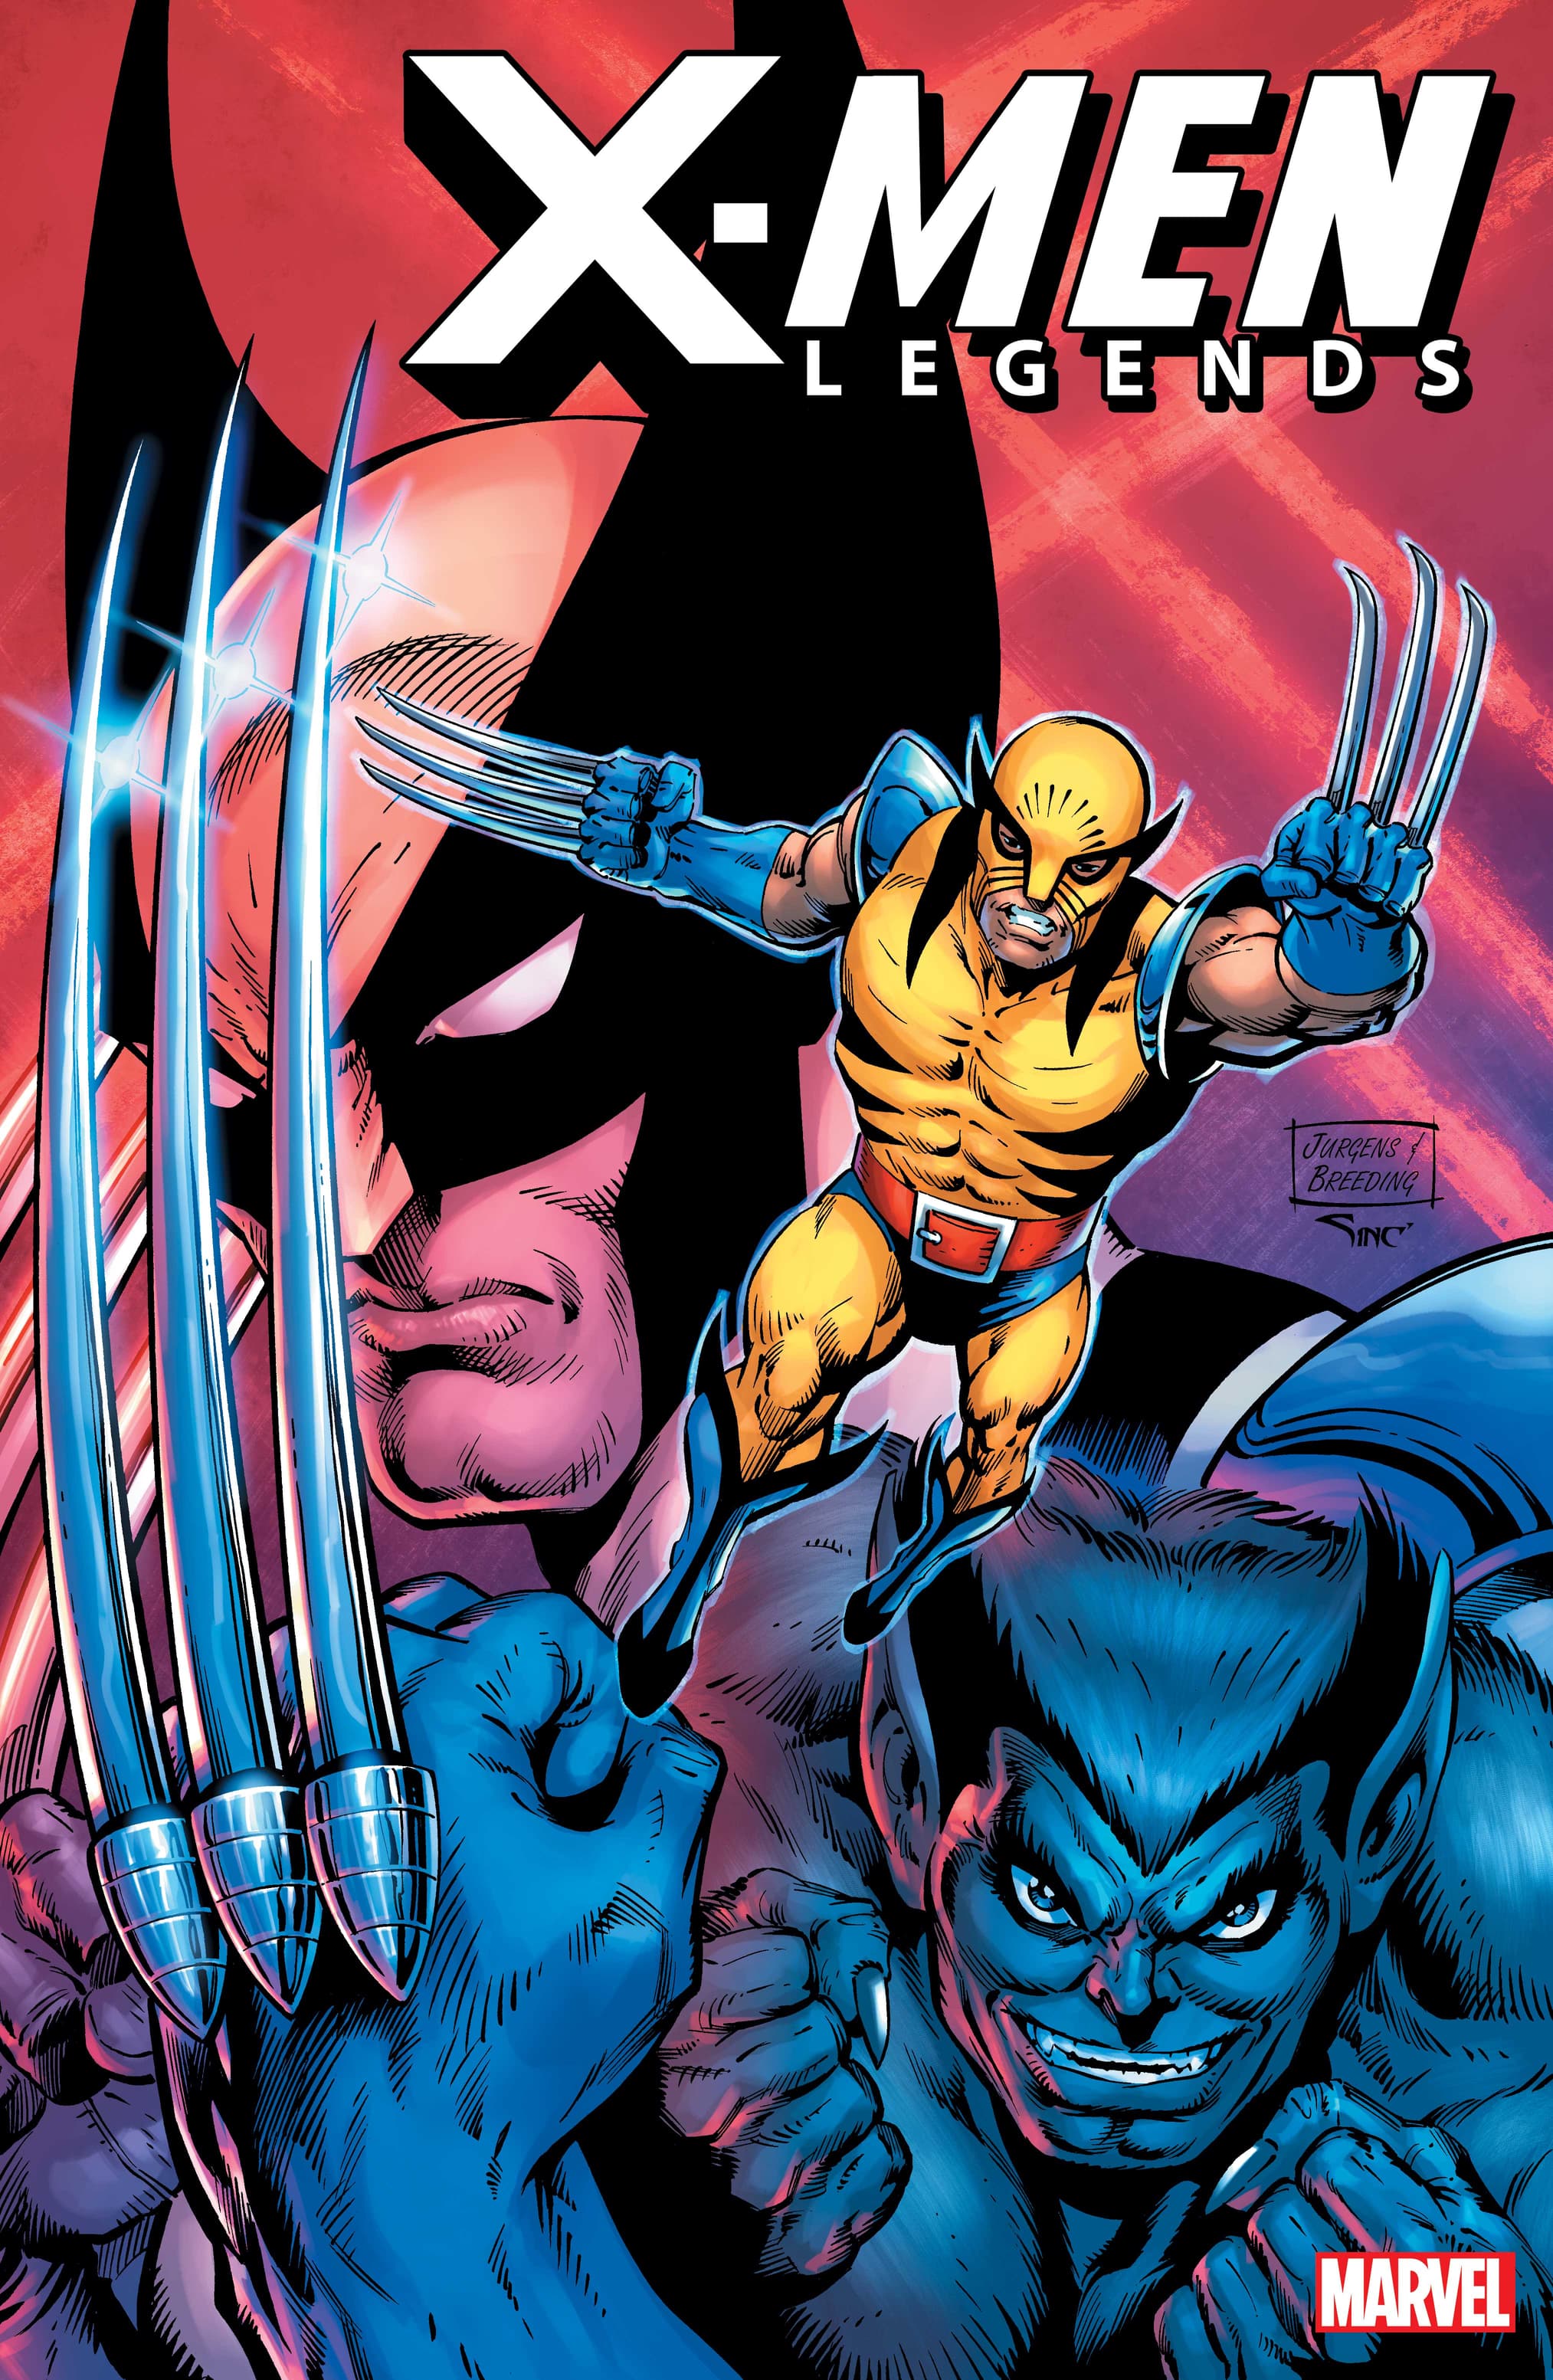 X-MEN LEGENDS #1 Variant Cover by DAN JURGENS